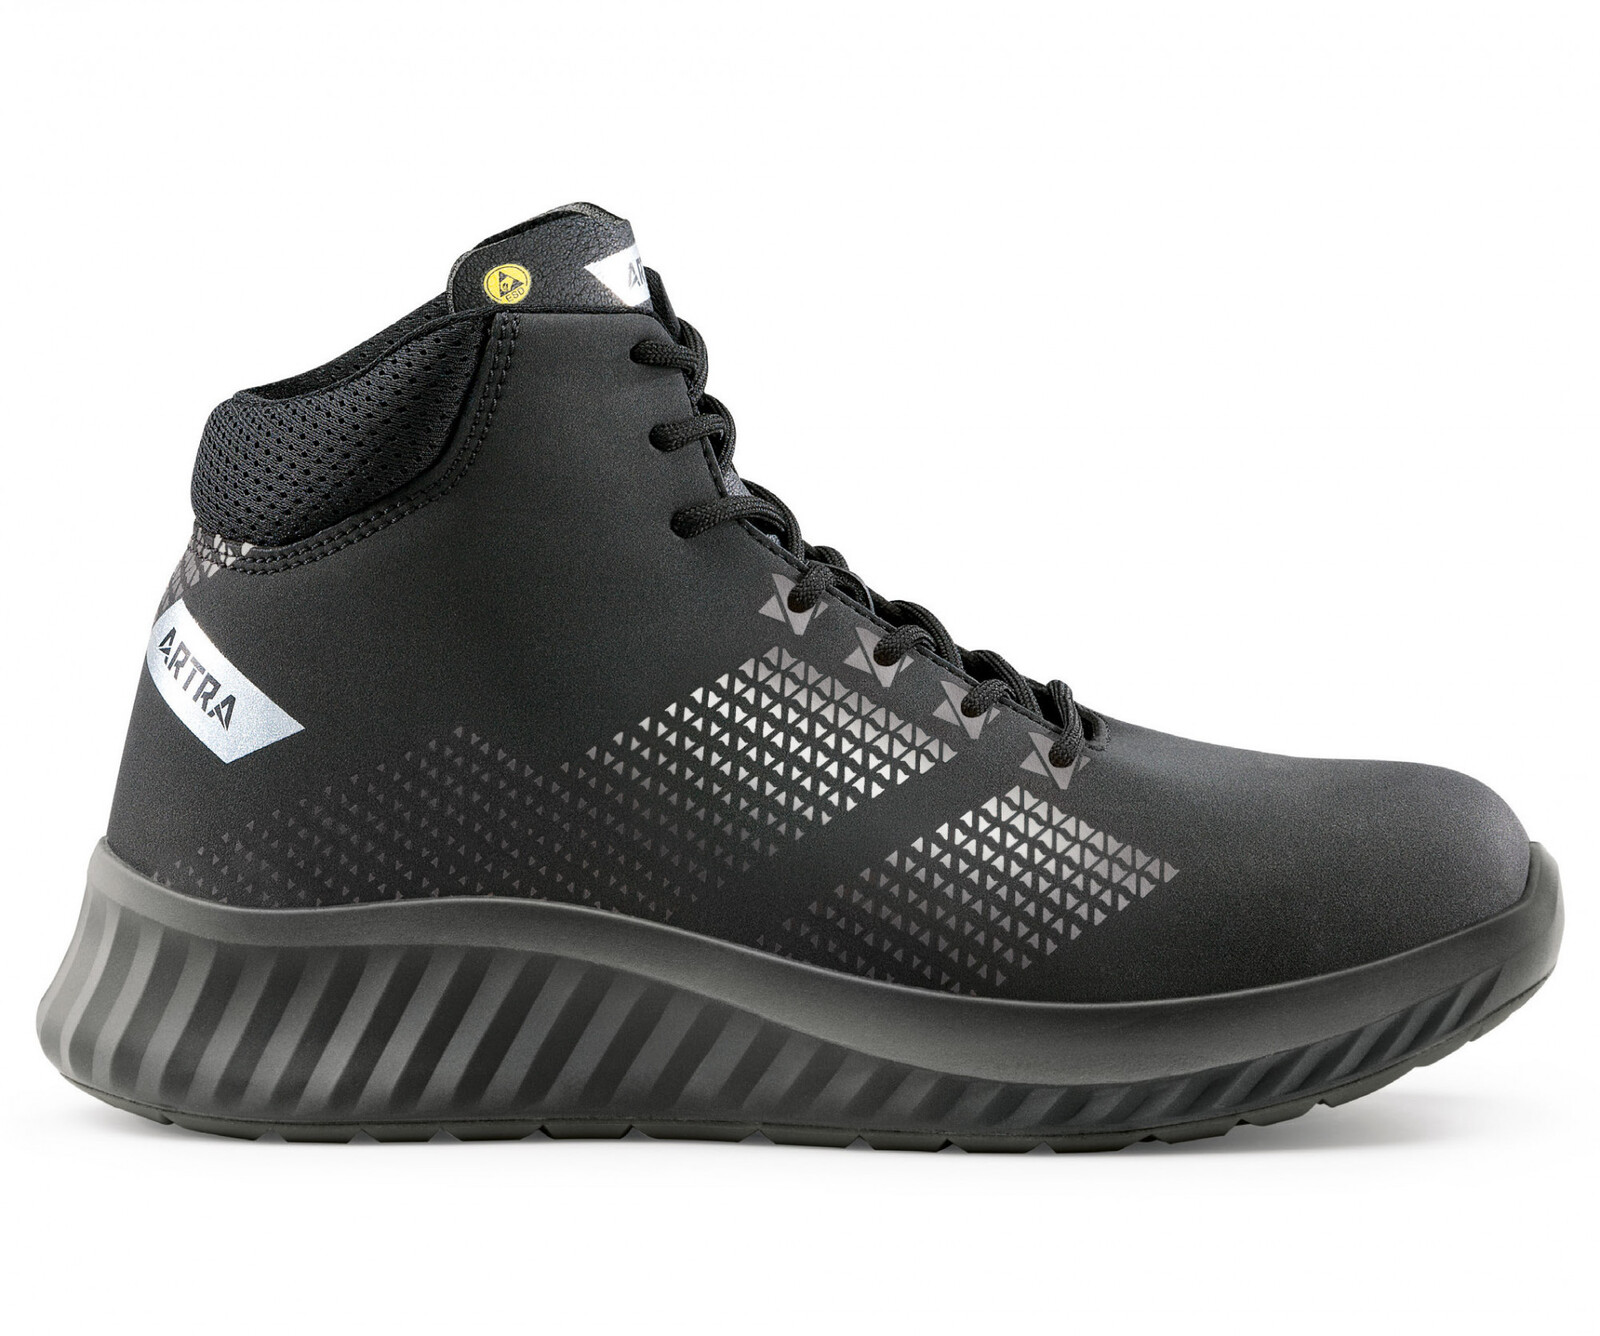 Bezpečnostná členková obuv Artra Aroserio 750 616560 S3 SRC ESD - veľkosť: 41, farba: čierna/sivá